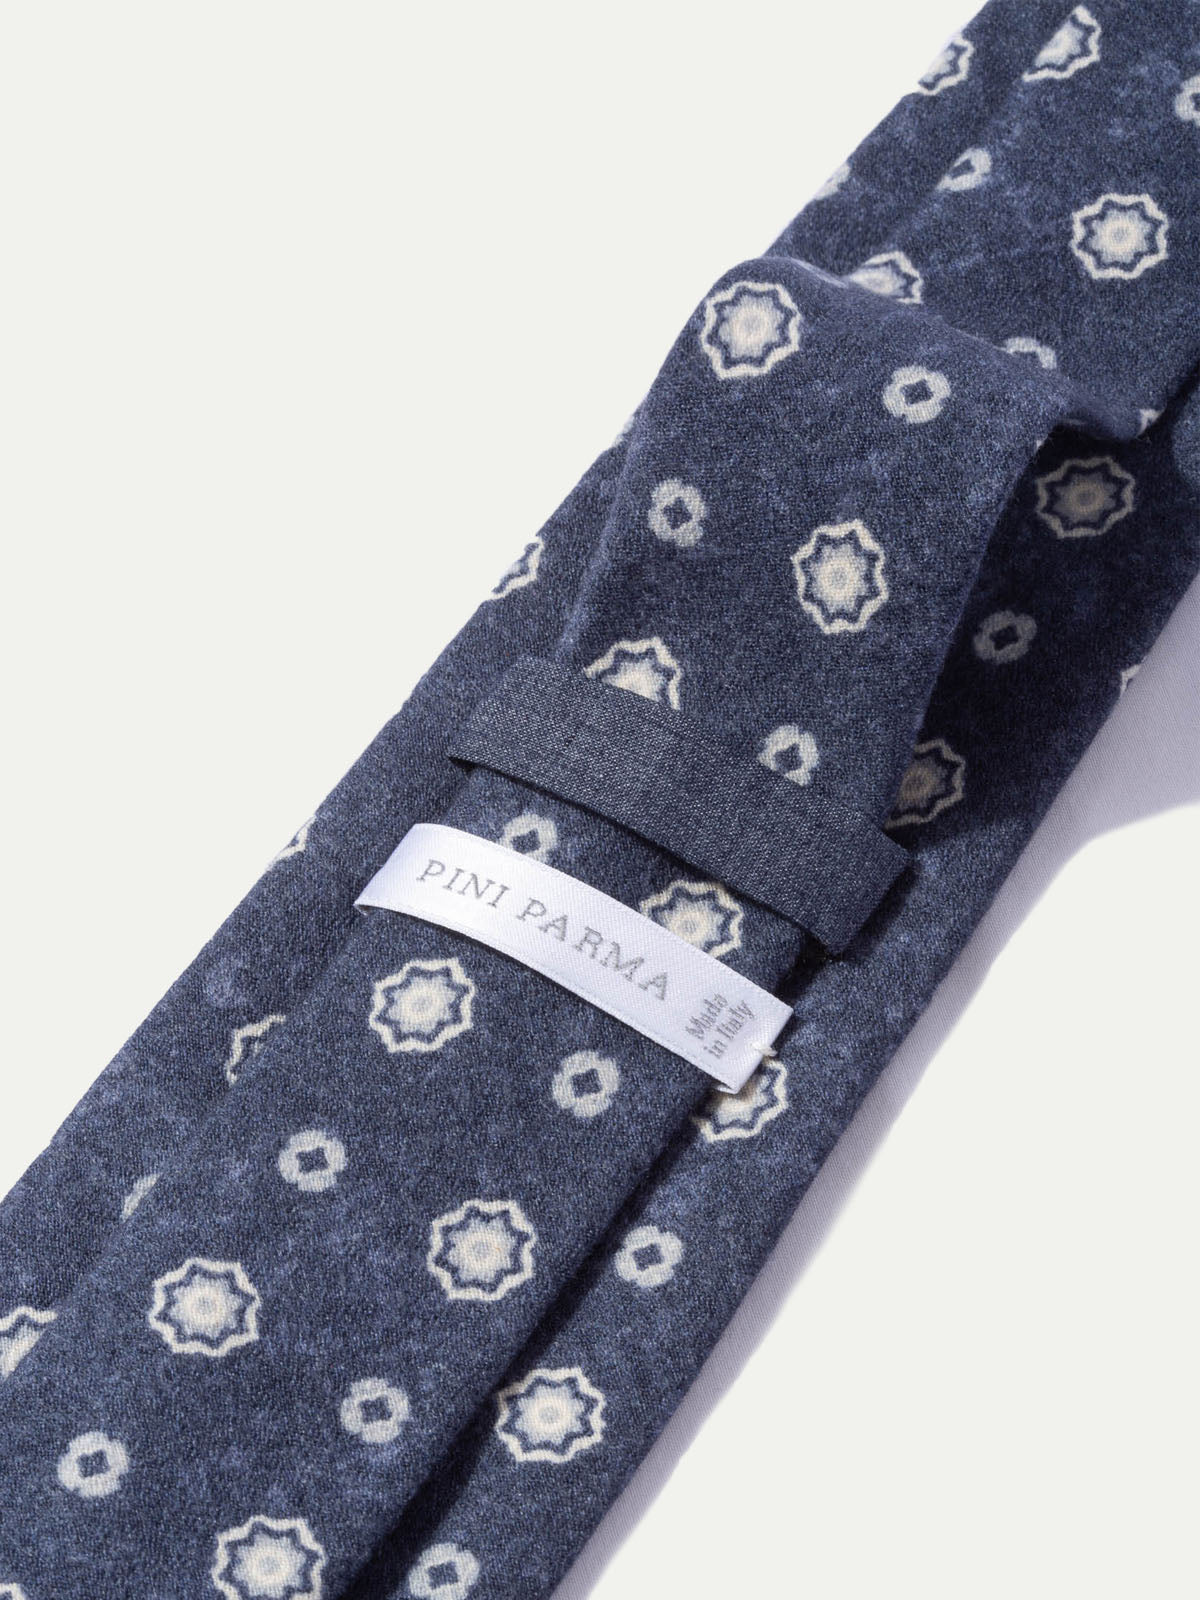 Cravate fantaisie bleue - Made In Italy